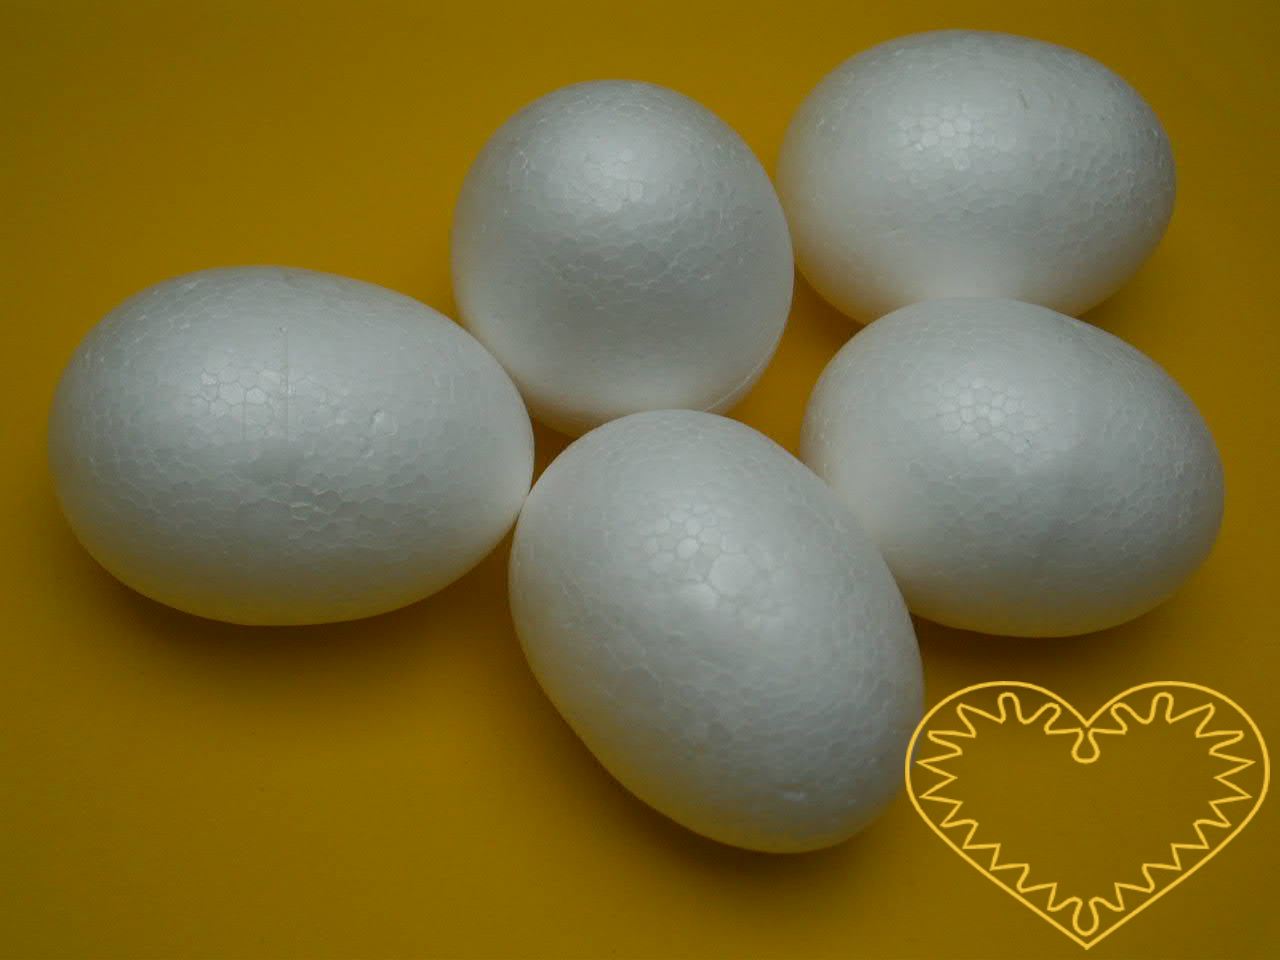 25 kusů polystyrenových vajíček o rozměrech 40 x 60 mm pro výrobu dekorací a aranžování. Tvary lze použít jako vajíčka nebo jako korpus pro tělíčka zvířátek apod. Možno je zdobit peřím, kořením, pomalovat, polepit papírem či textilem, odekorovat stuh